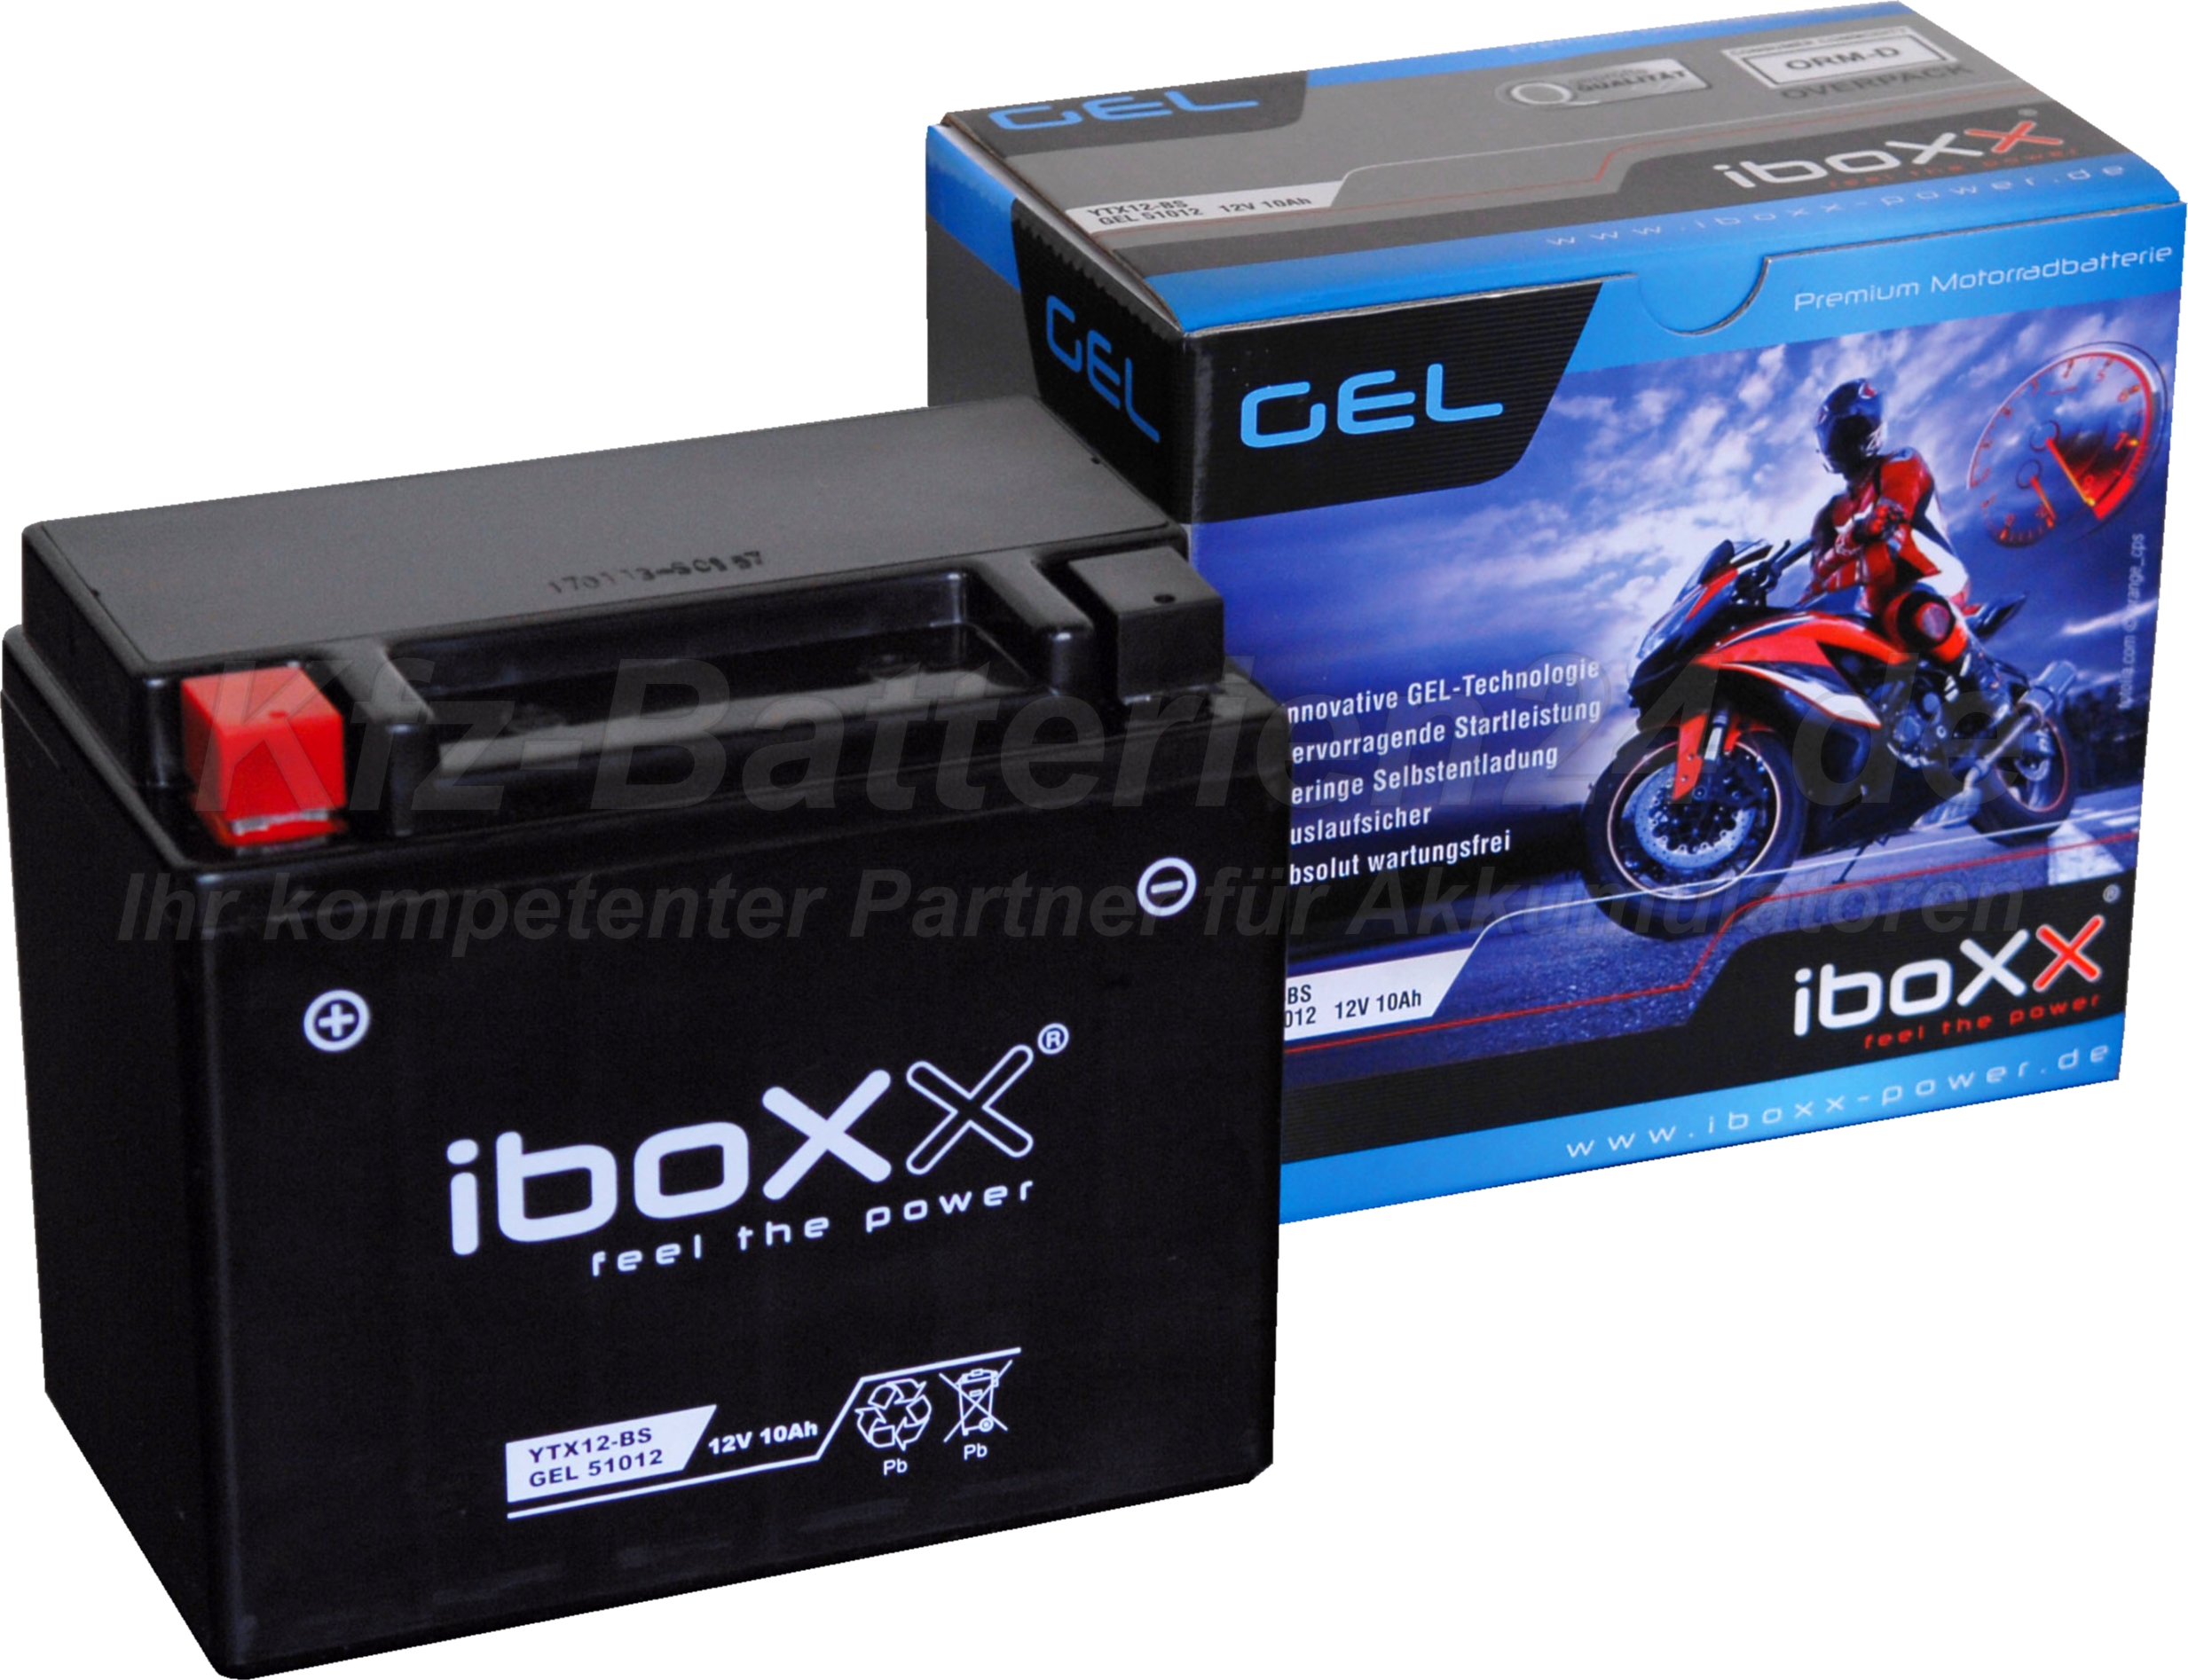 GEL Motorradbatterie YTX12-BS Iboxx 51012 12V 10Ah Gelbatterie